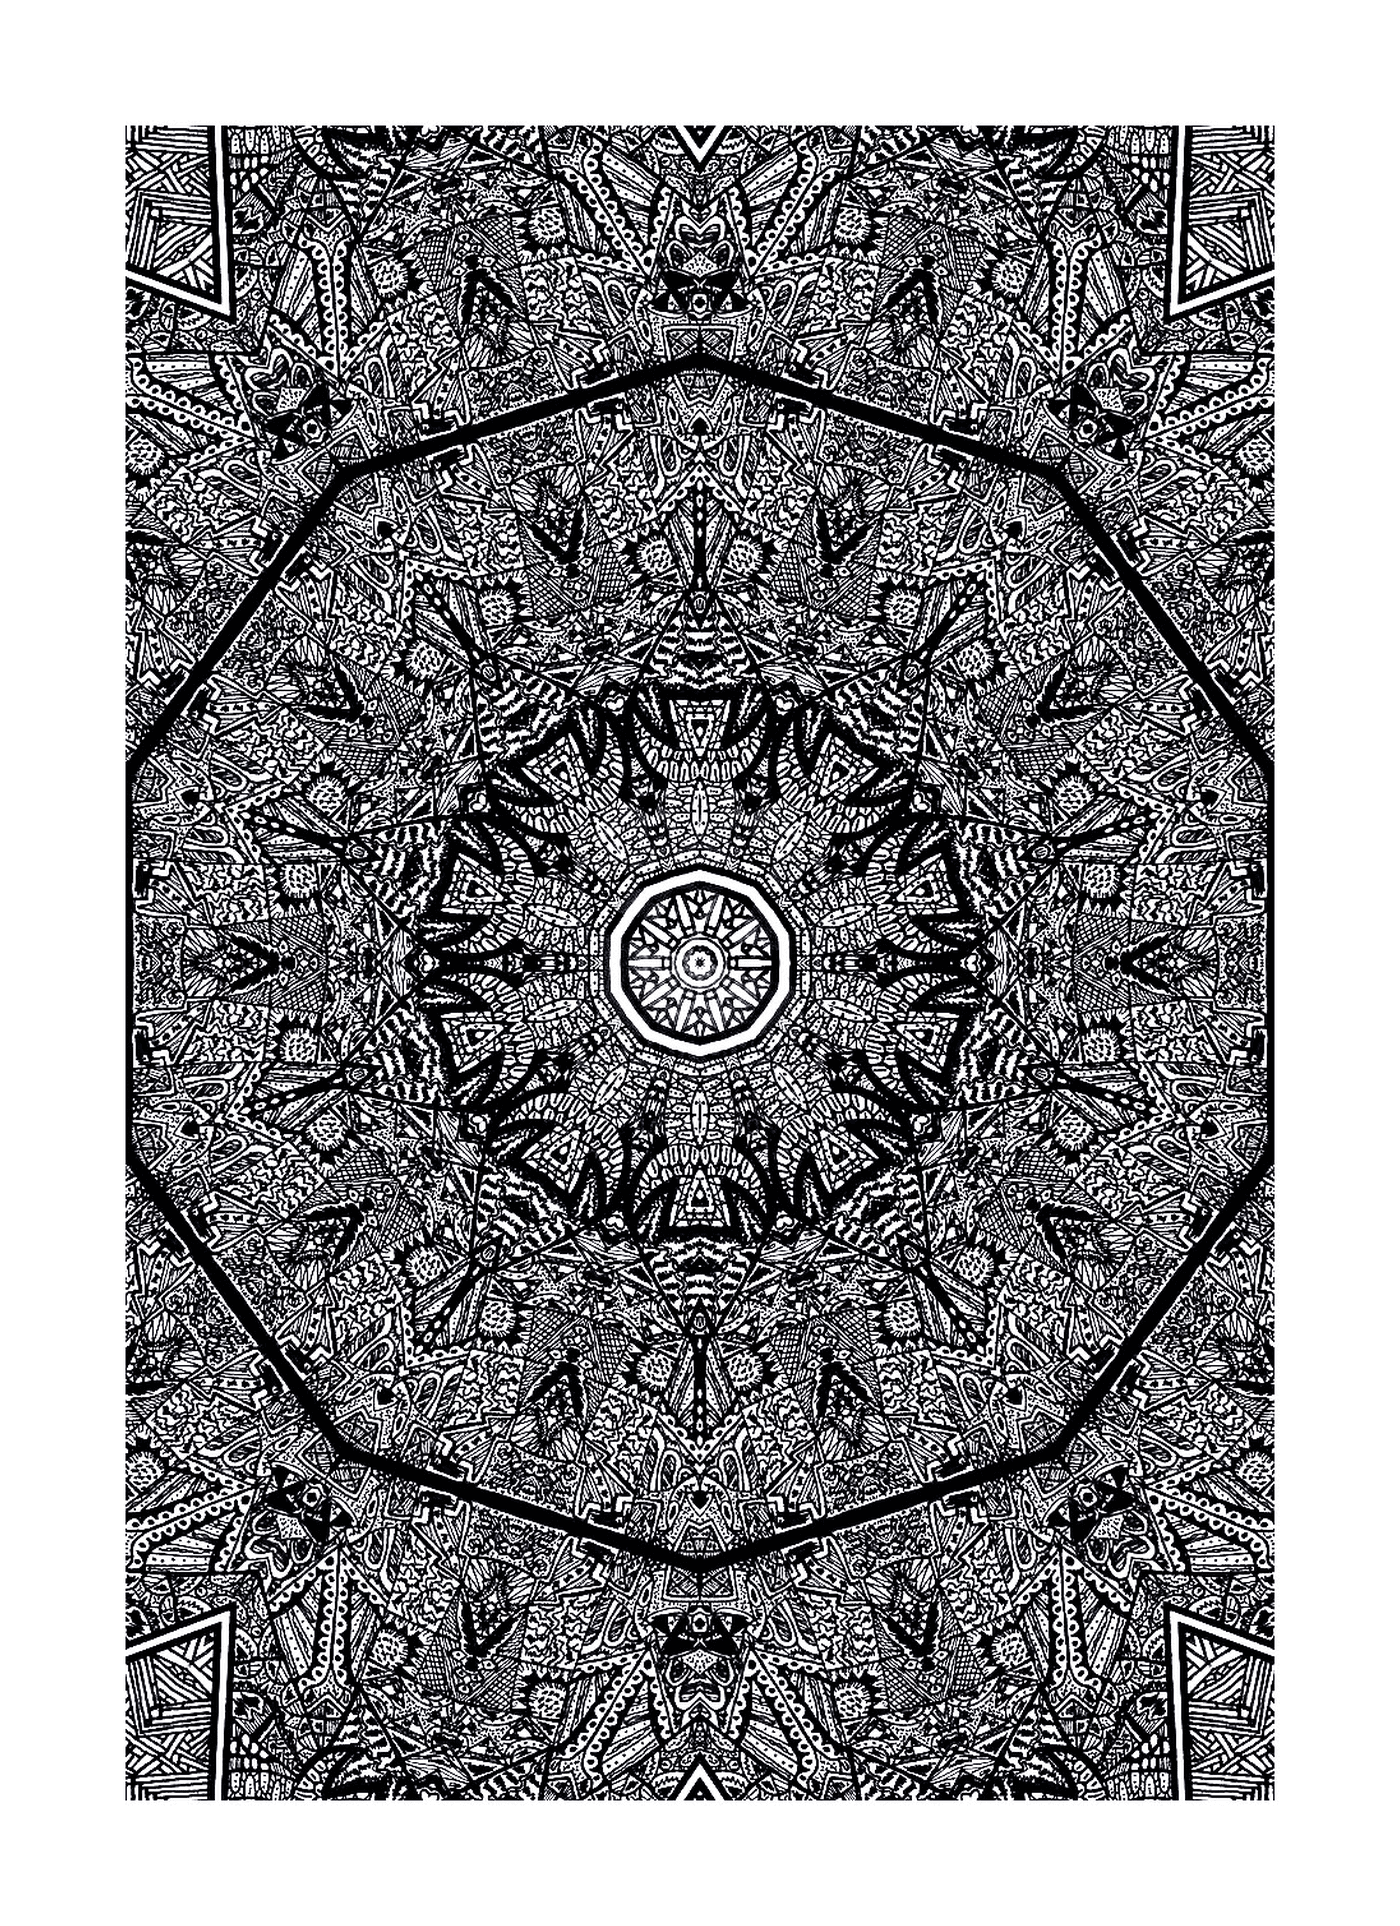  черно-белый рисунок с круговой конструкцией 